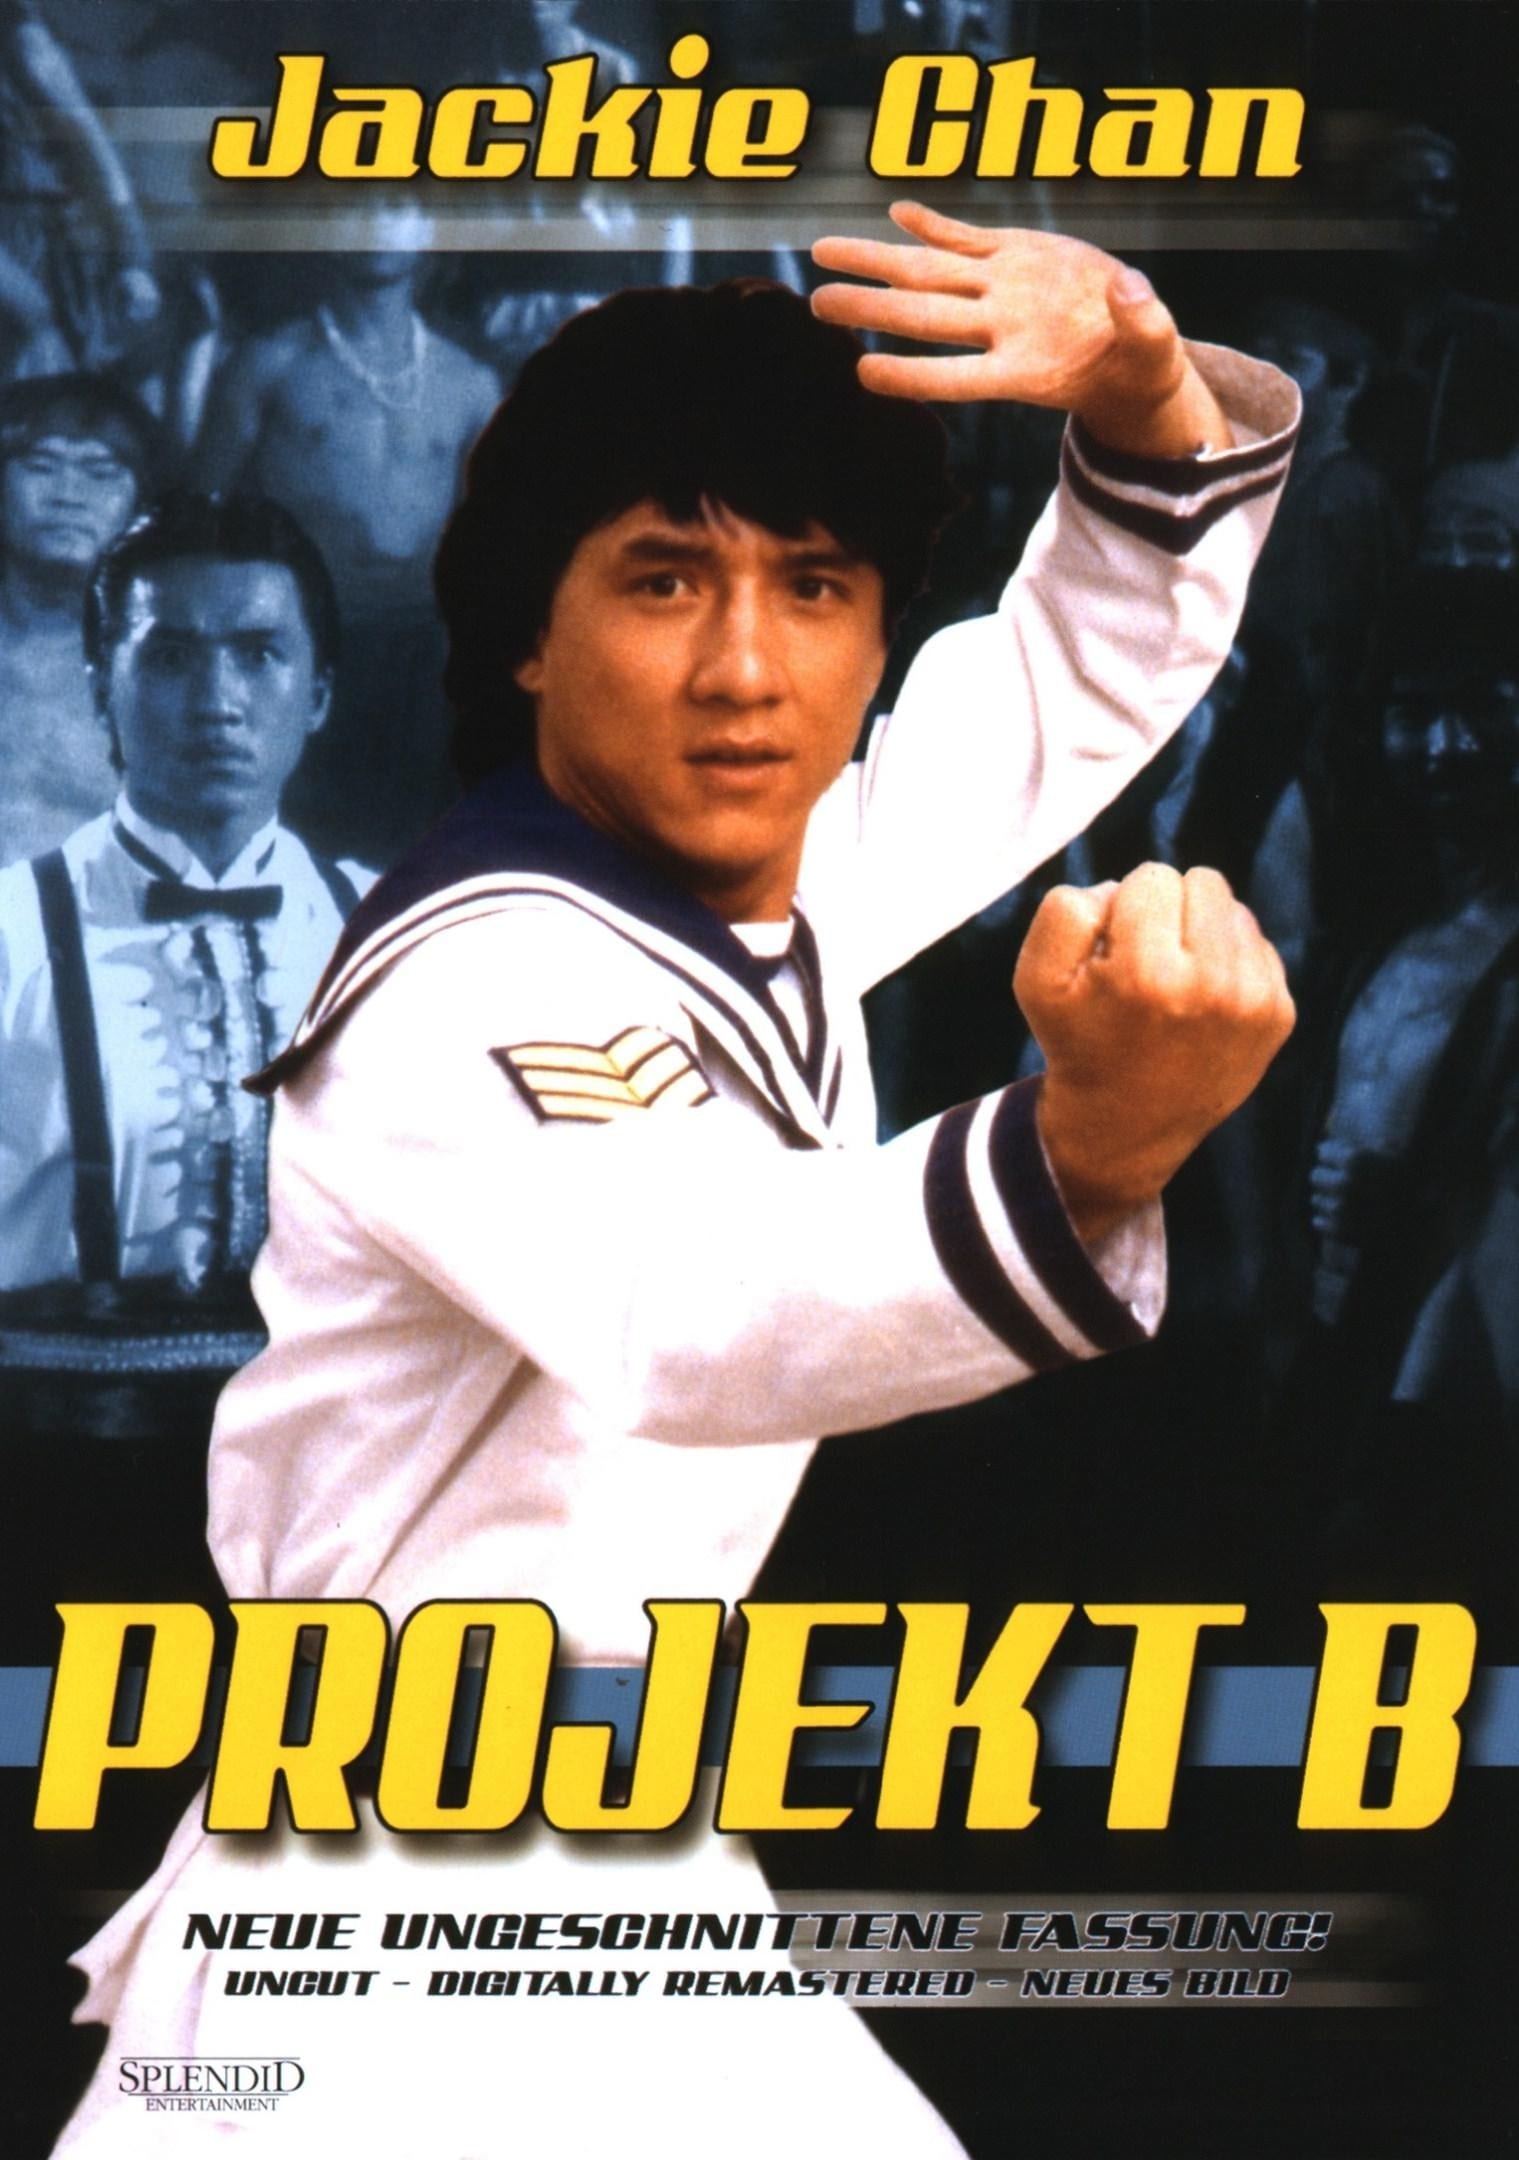 Plakat von "Projekt B"